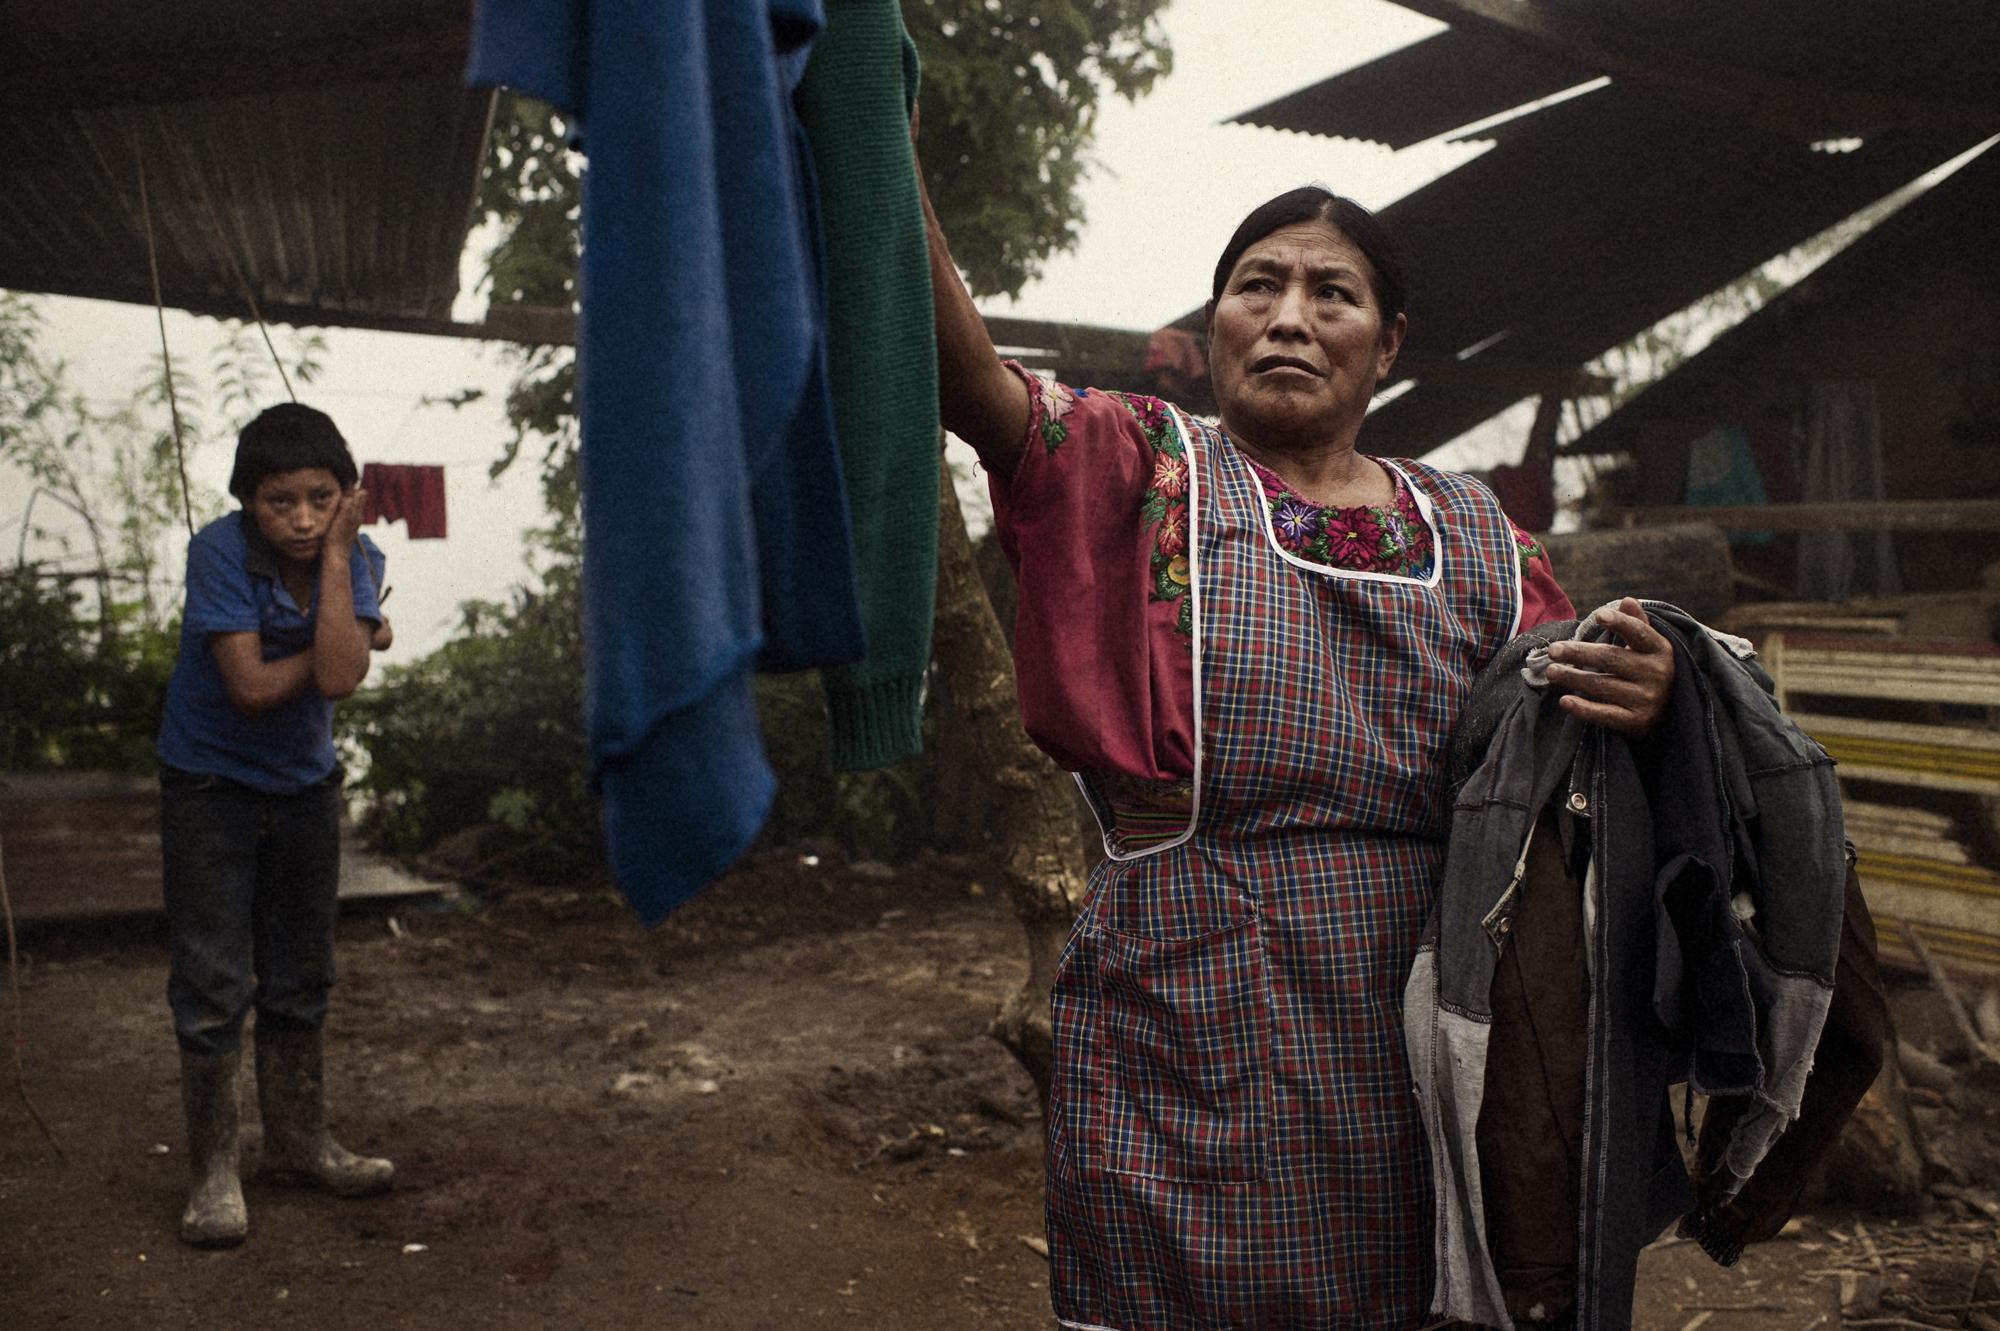 Microcredit / Guatemala - Quetzaltenango, Palestina, Guatemala. September 2011...